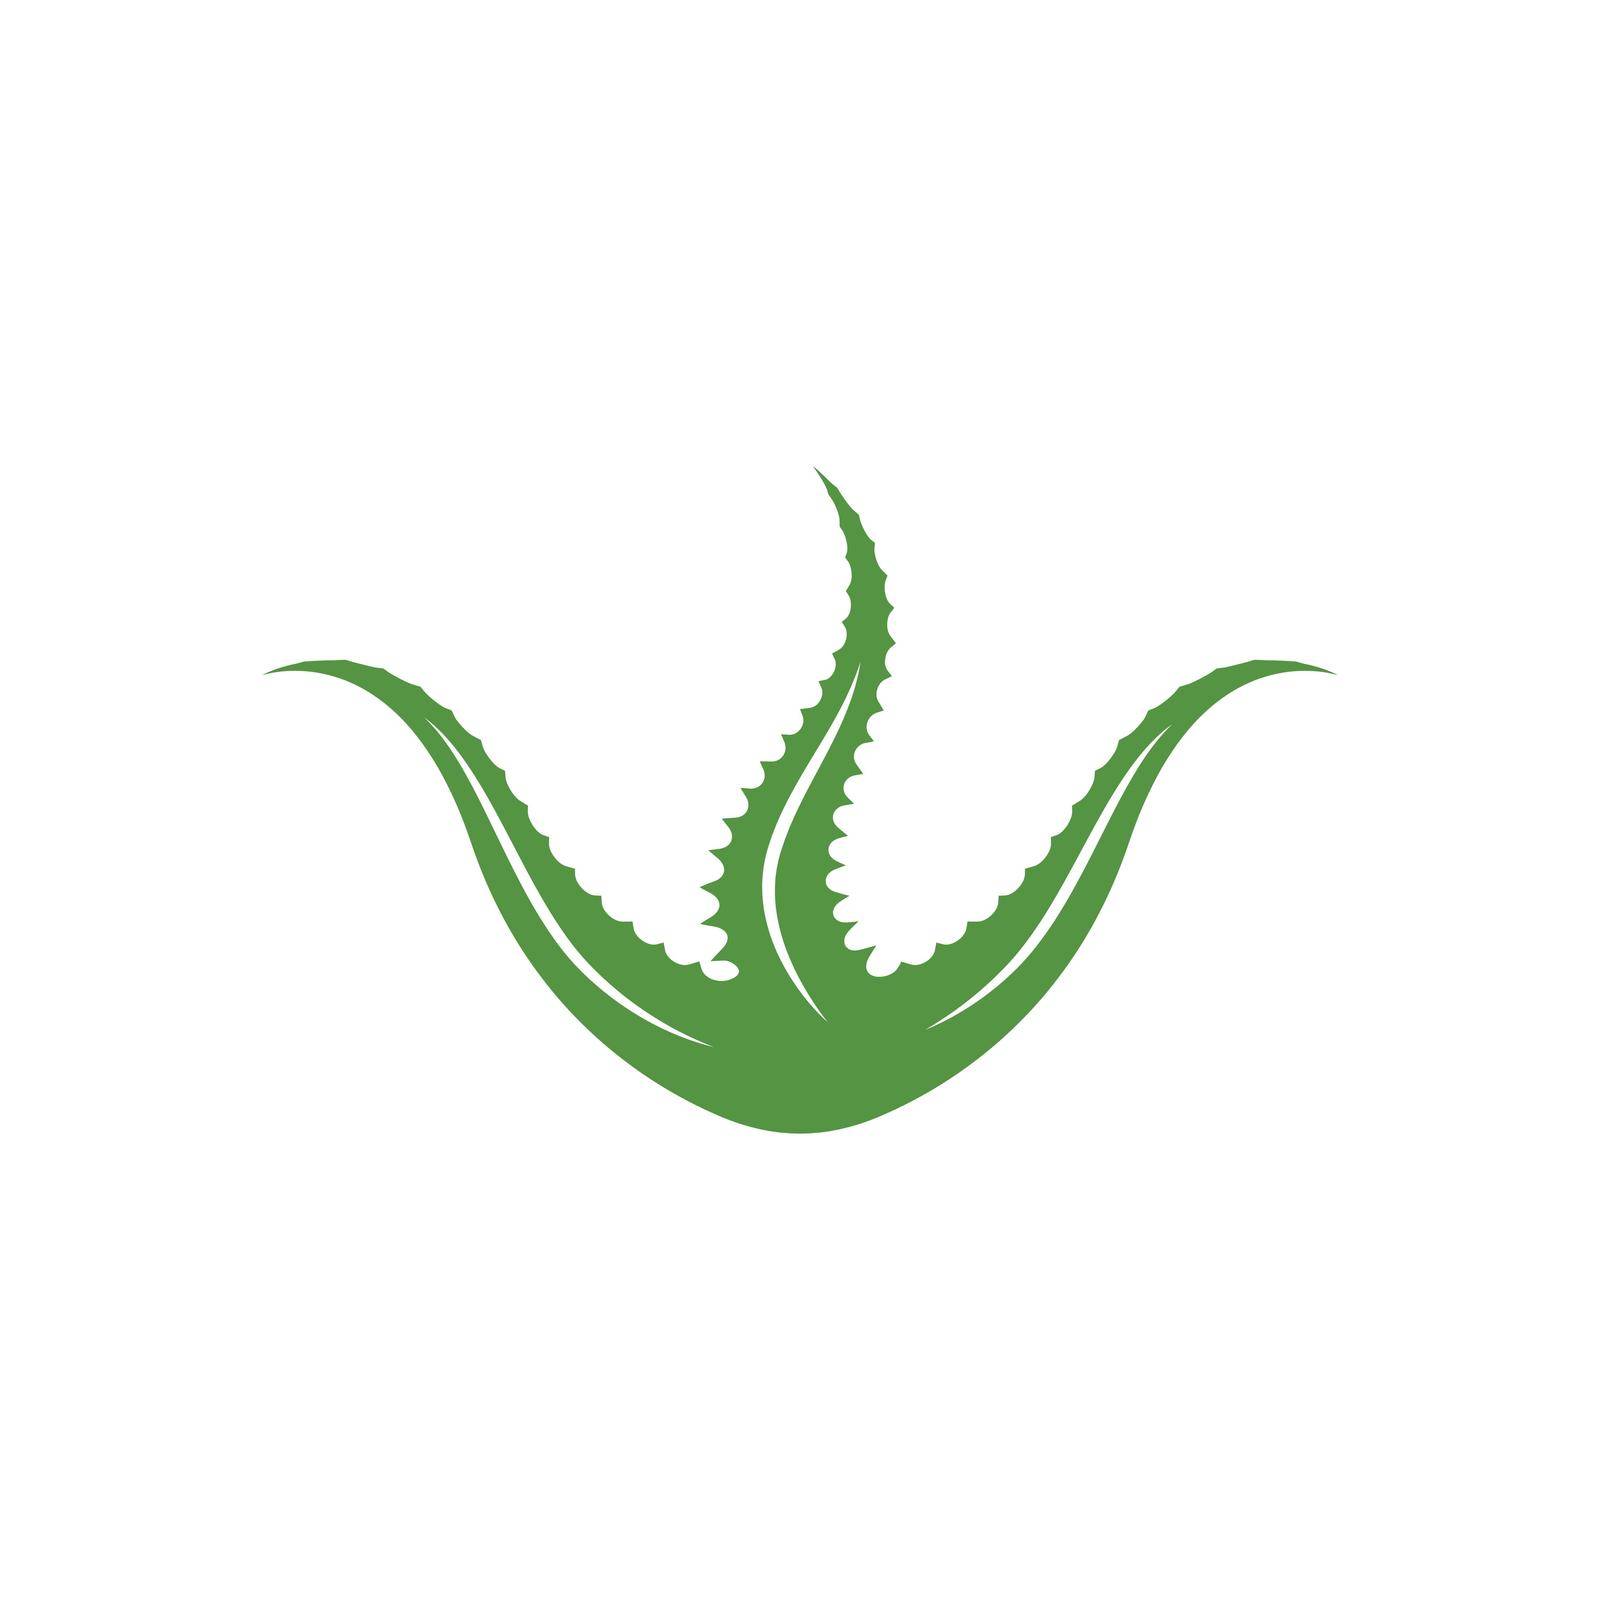 aloevera logo icon vector illustration design template